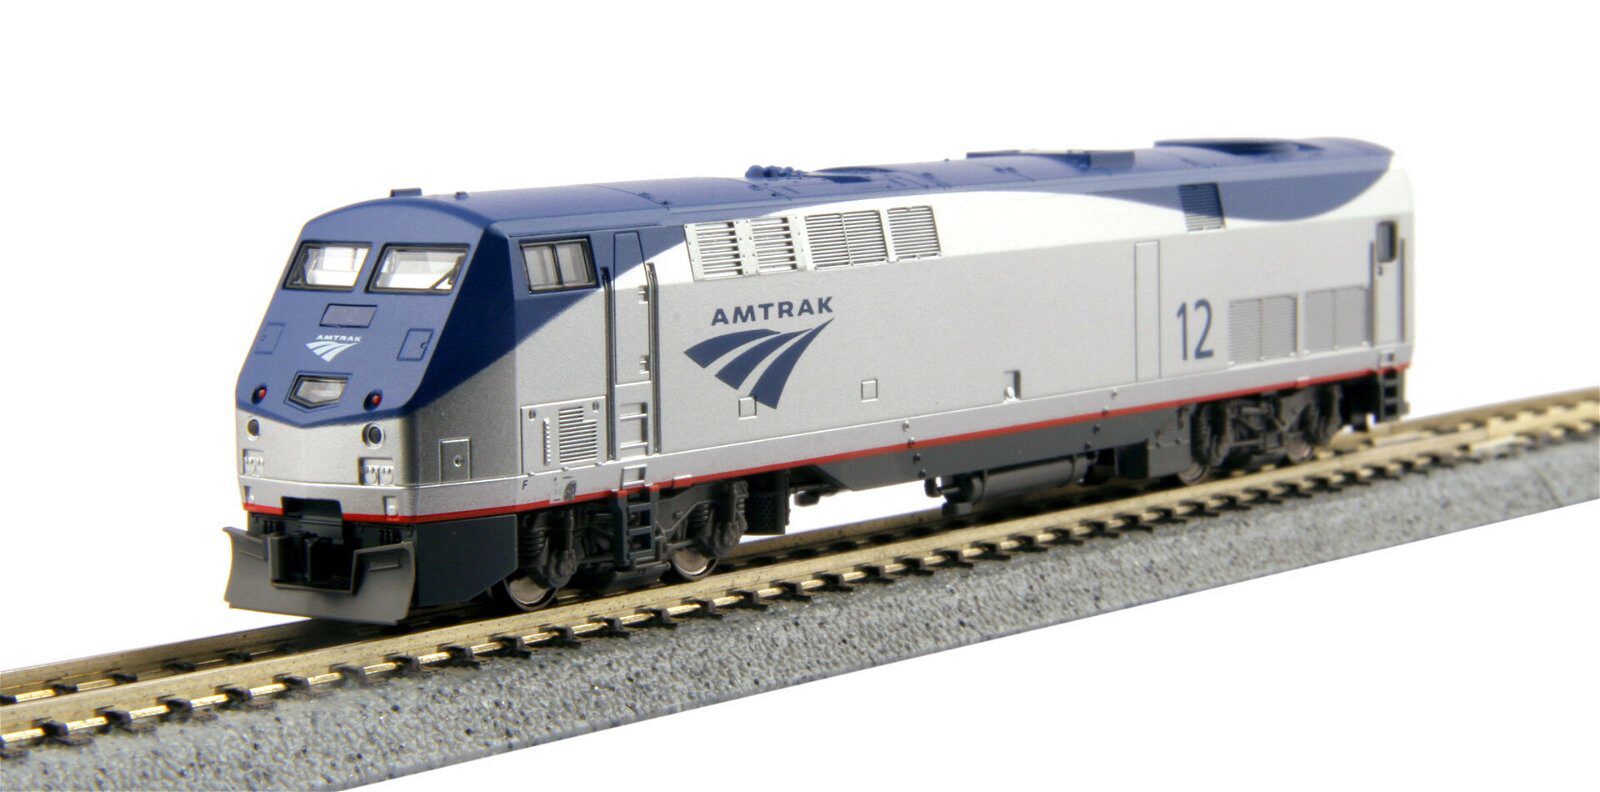 Kato 701766032 P42 Amtrak Genesis Phase V, #60